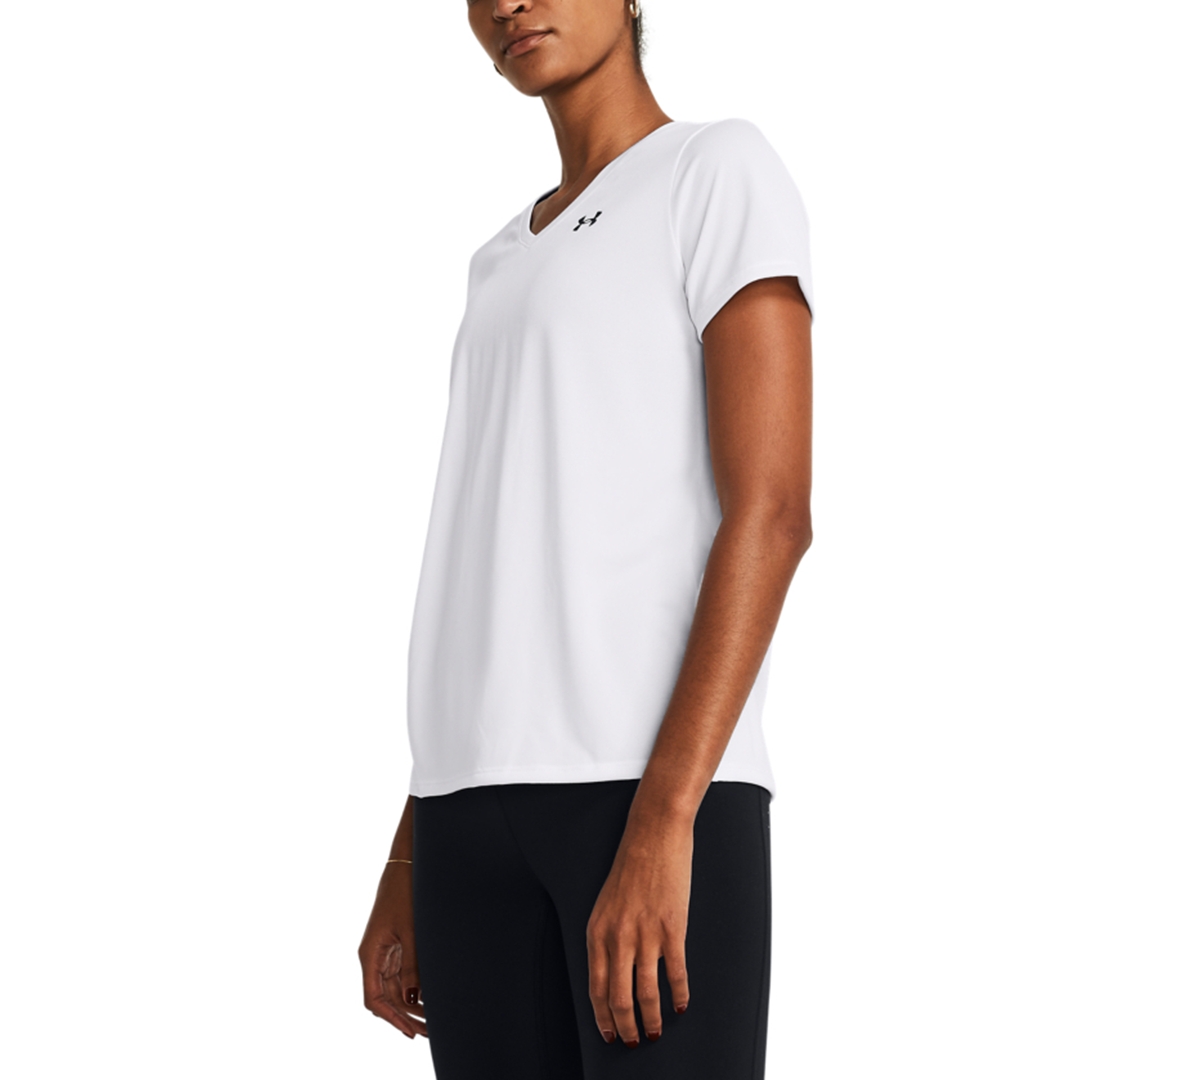 Under Armour Women's Tech V-neck Short-sleeve Top In White,black